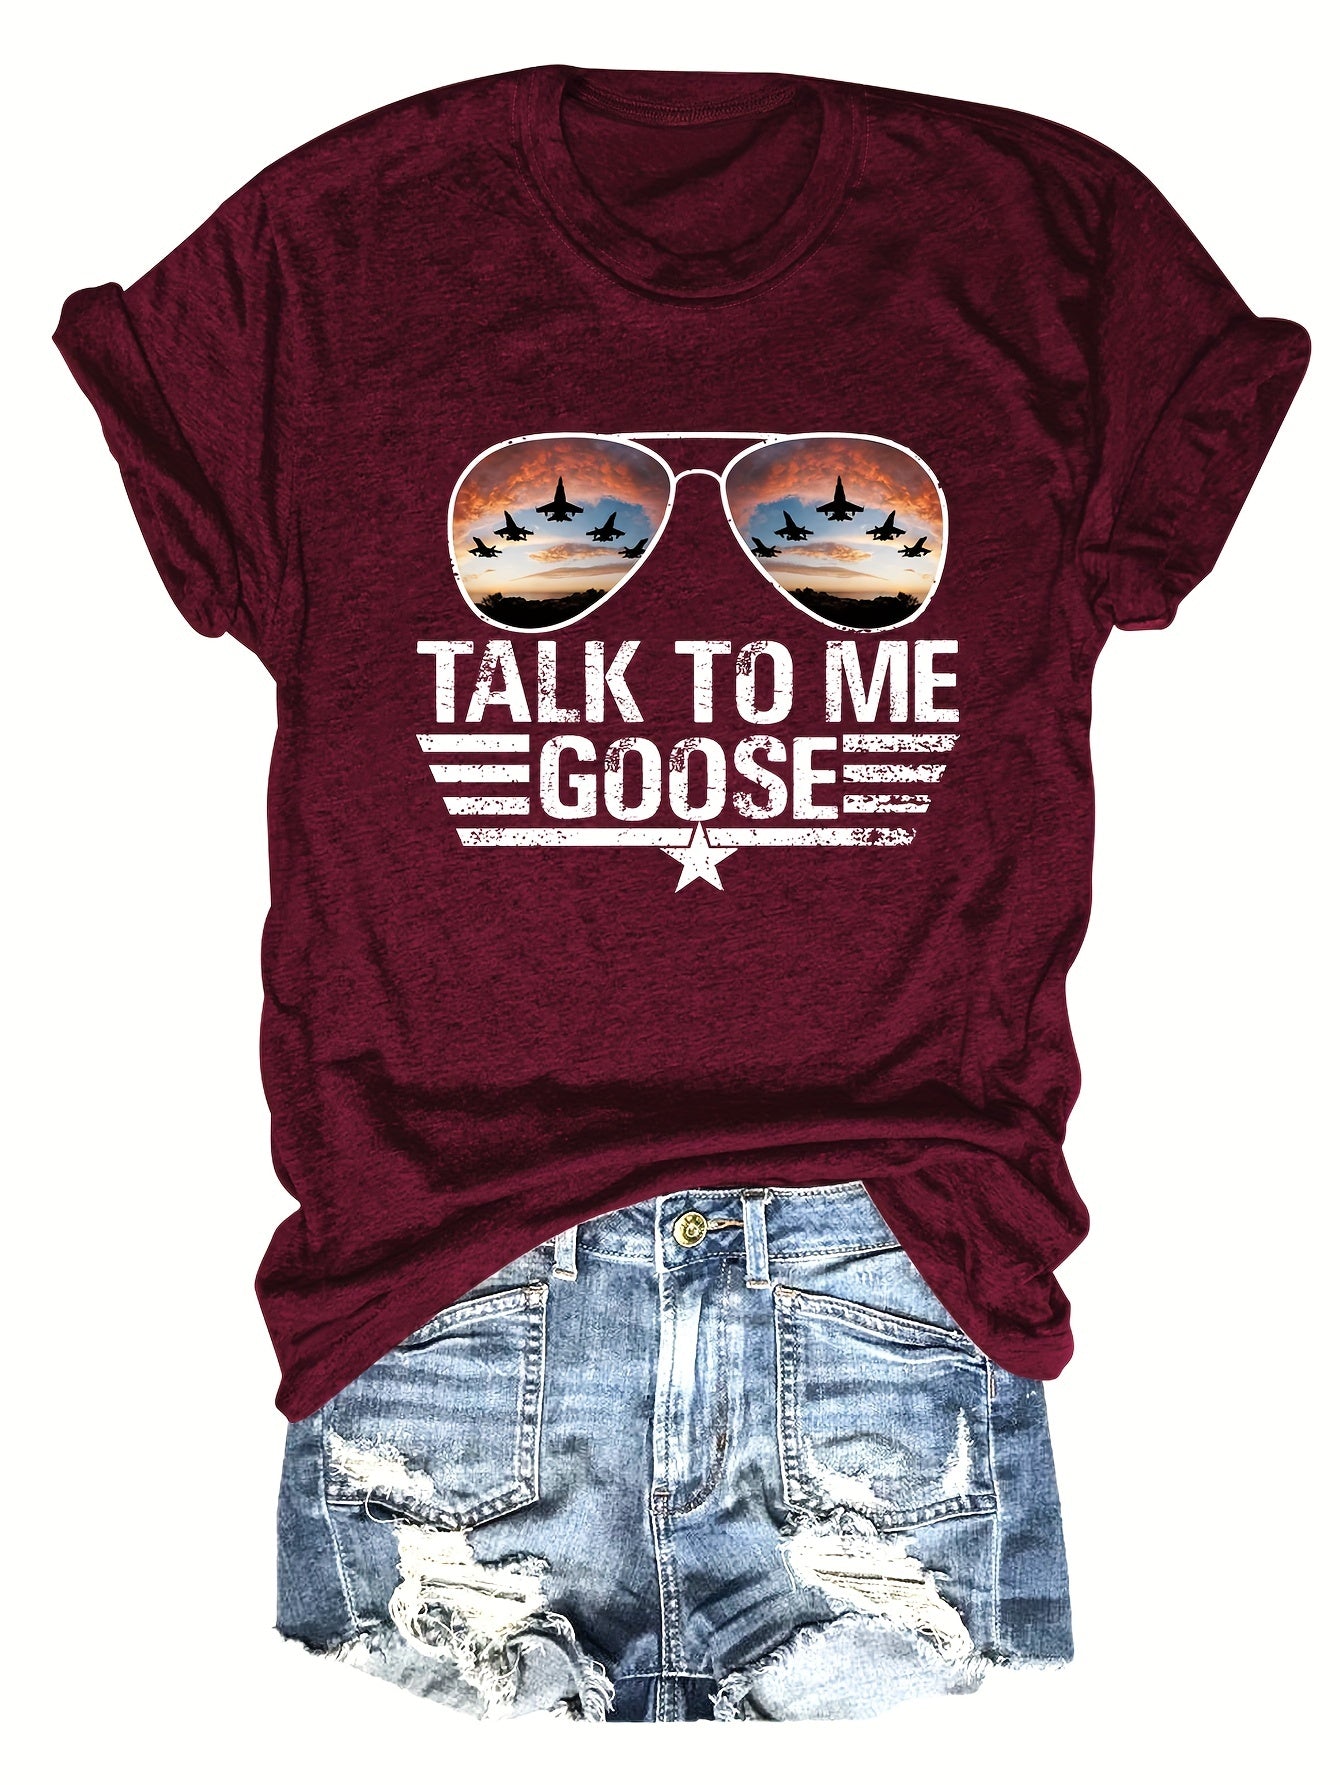 Talk to me Goose T-shirt